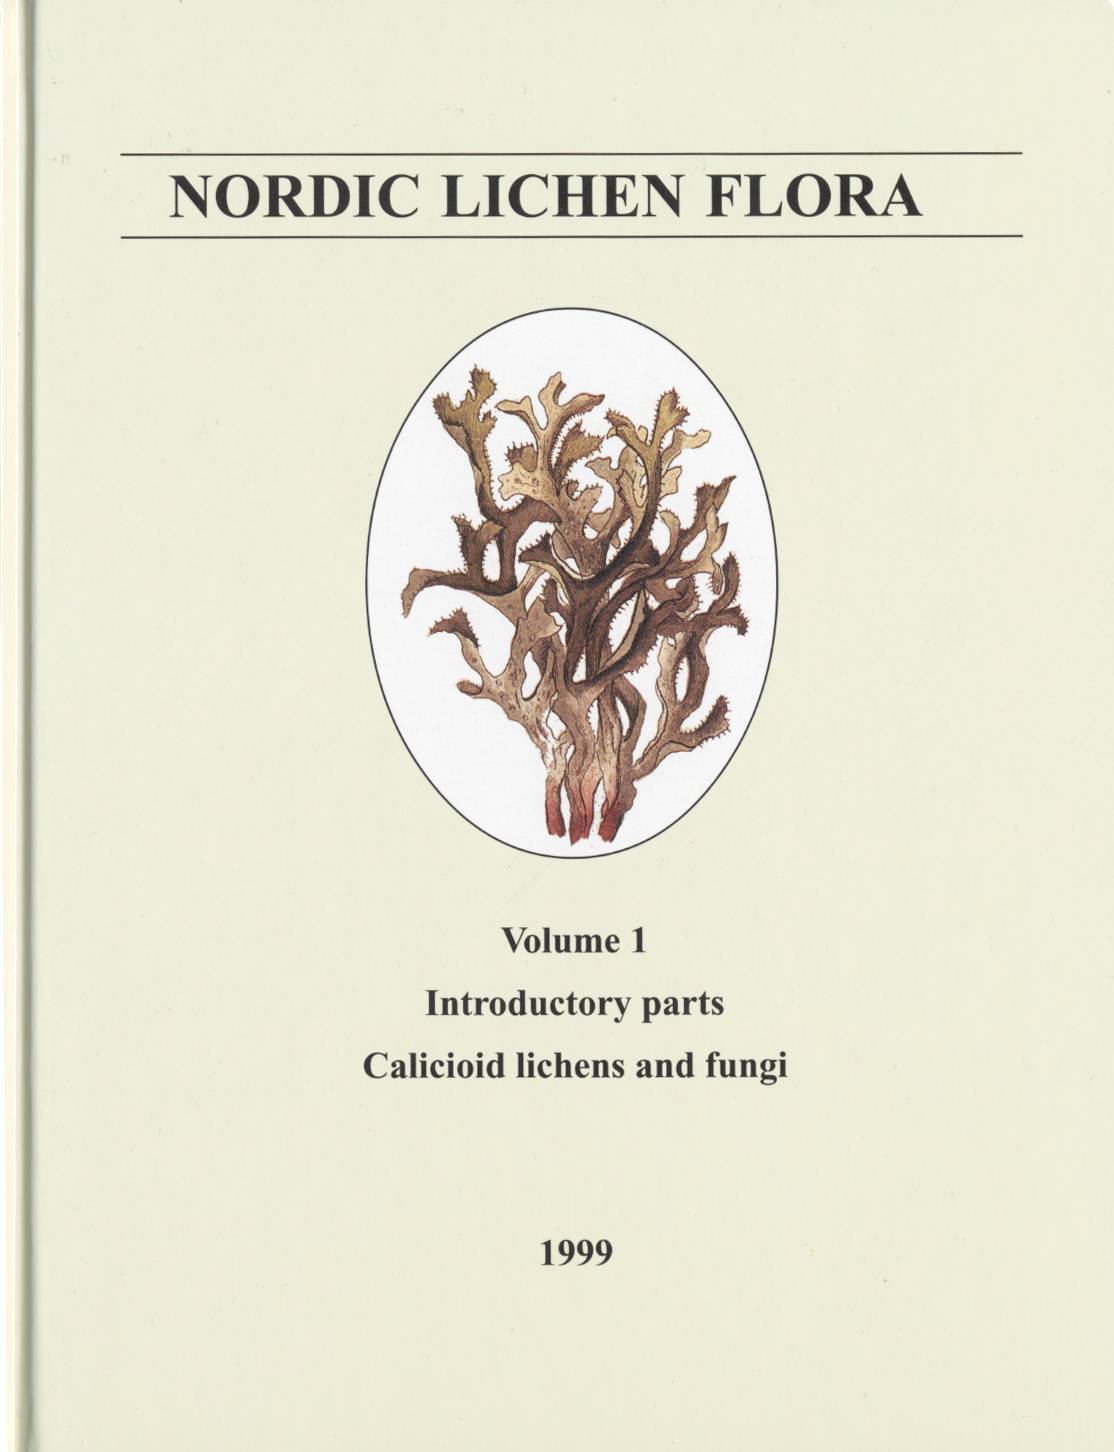 Nordic lichen flora. Vol. 1, Introductory parts, calicioid lichens and fungi